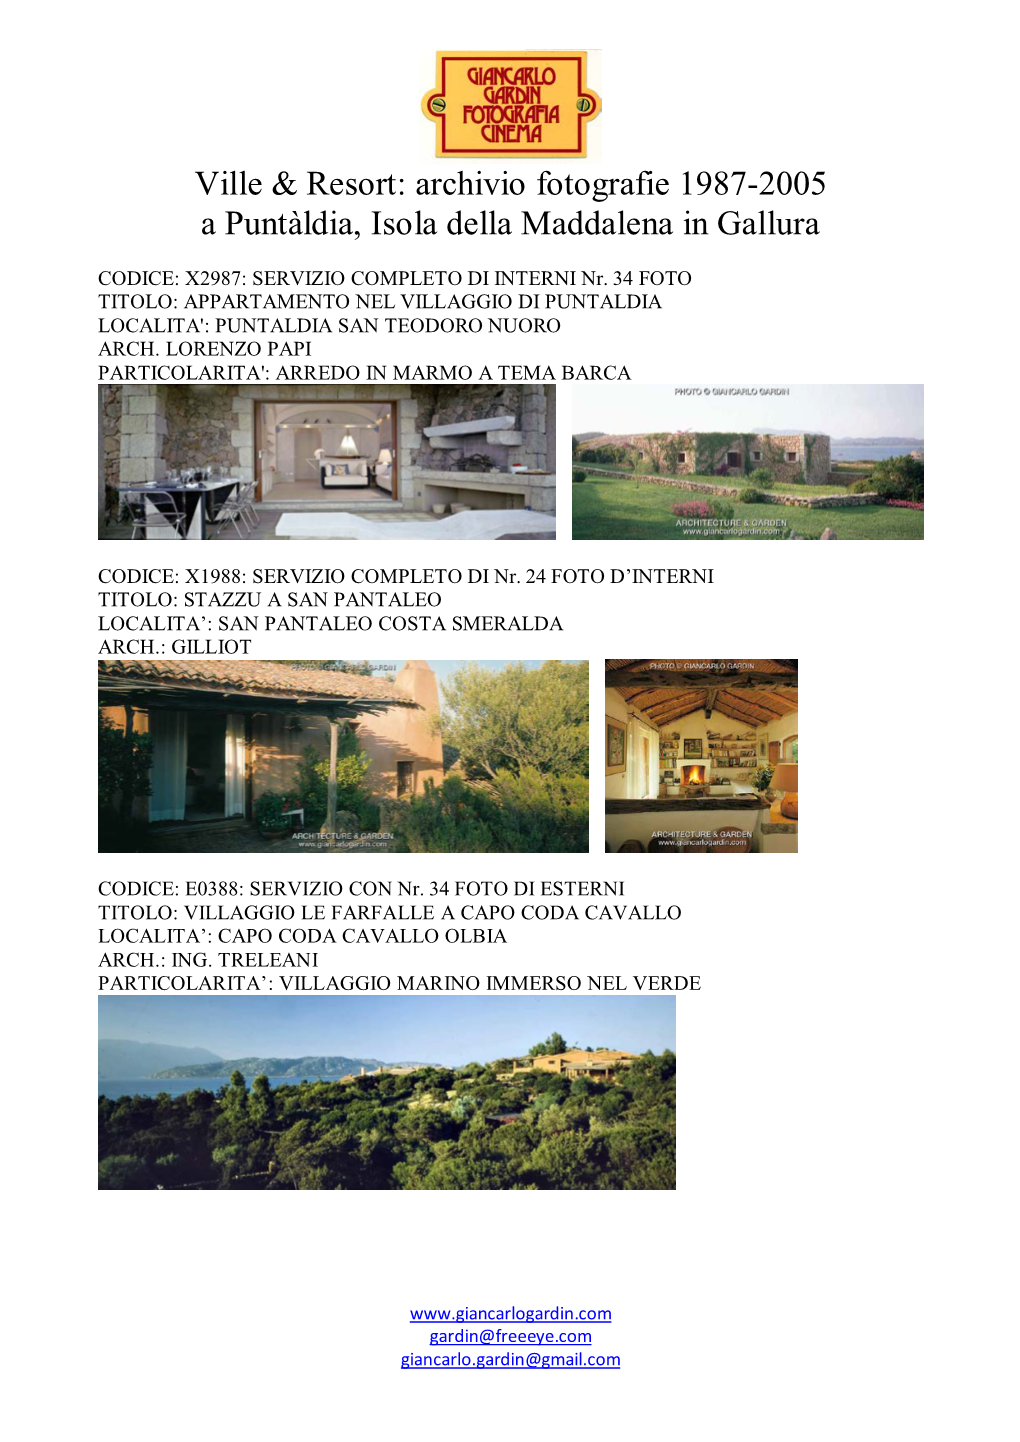 Archivio Fotografie 1987-2005 a Puntàldia, Isola Della Maddalena in Gallura